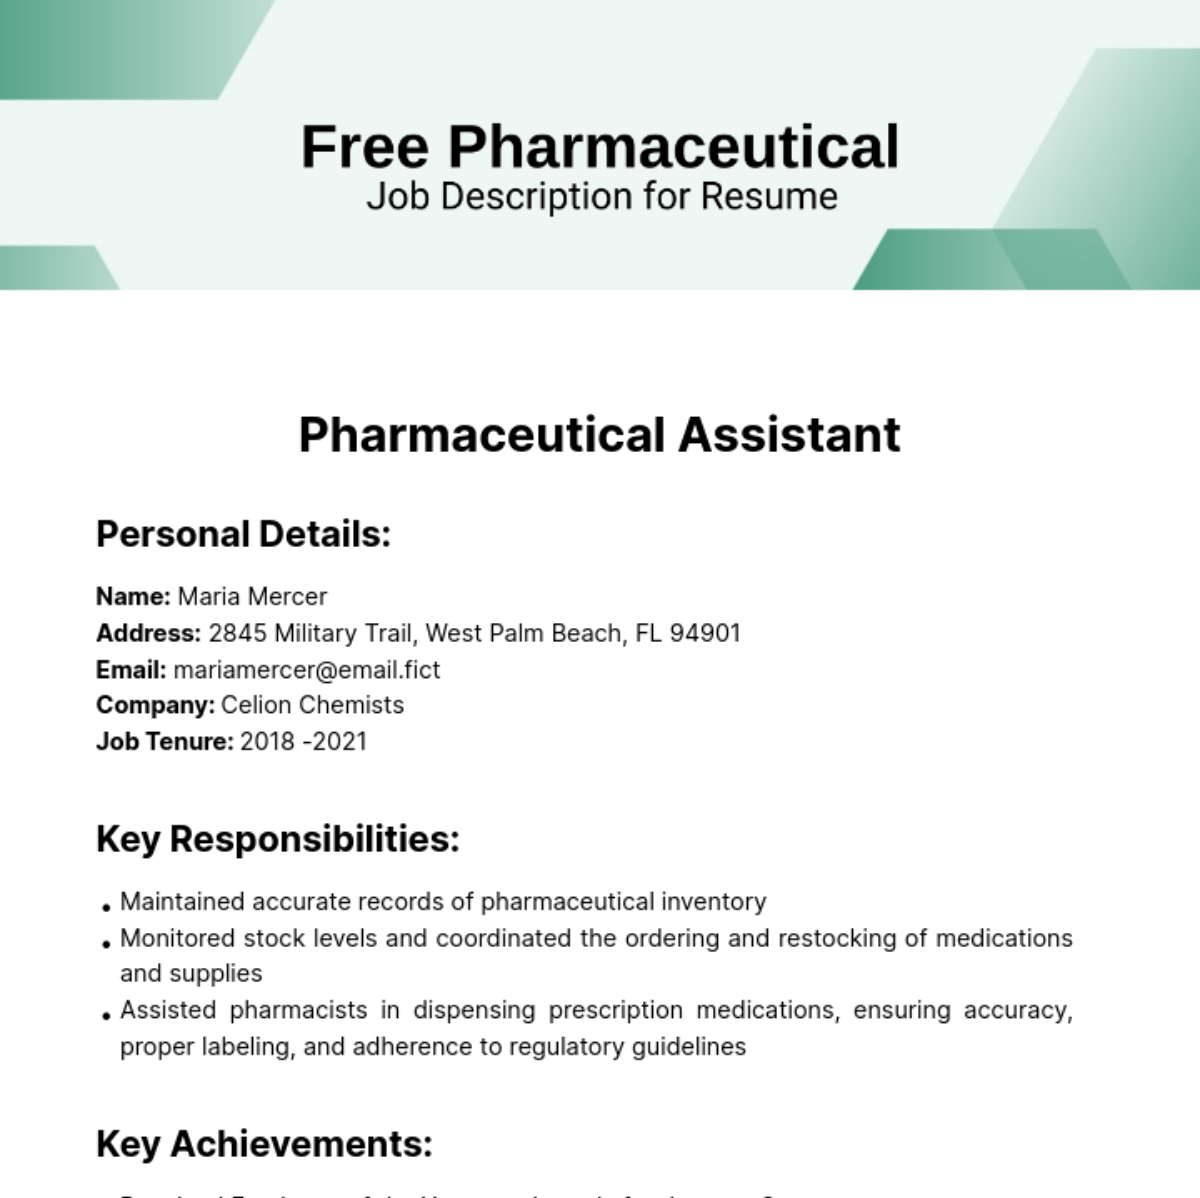 Pharmaceutical Job Description for Resume Template